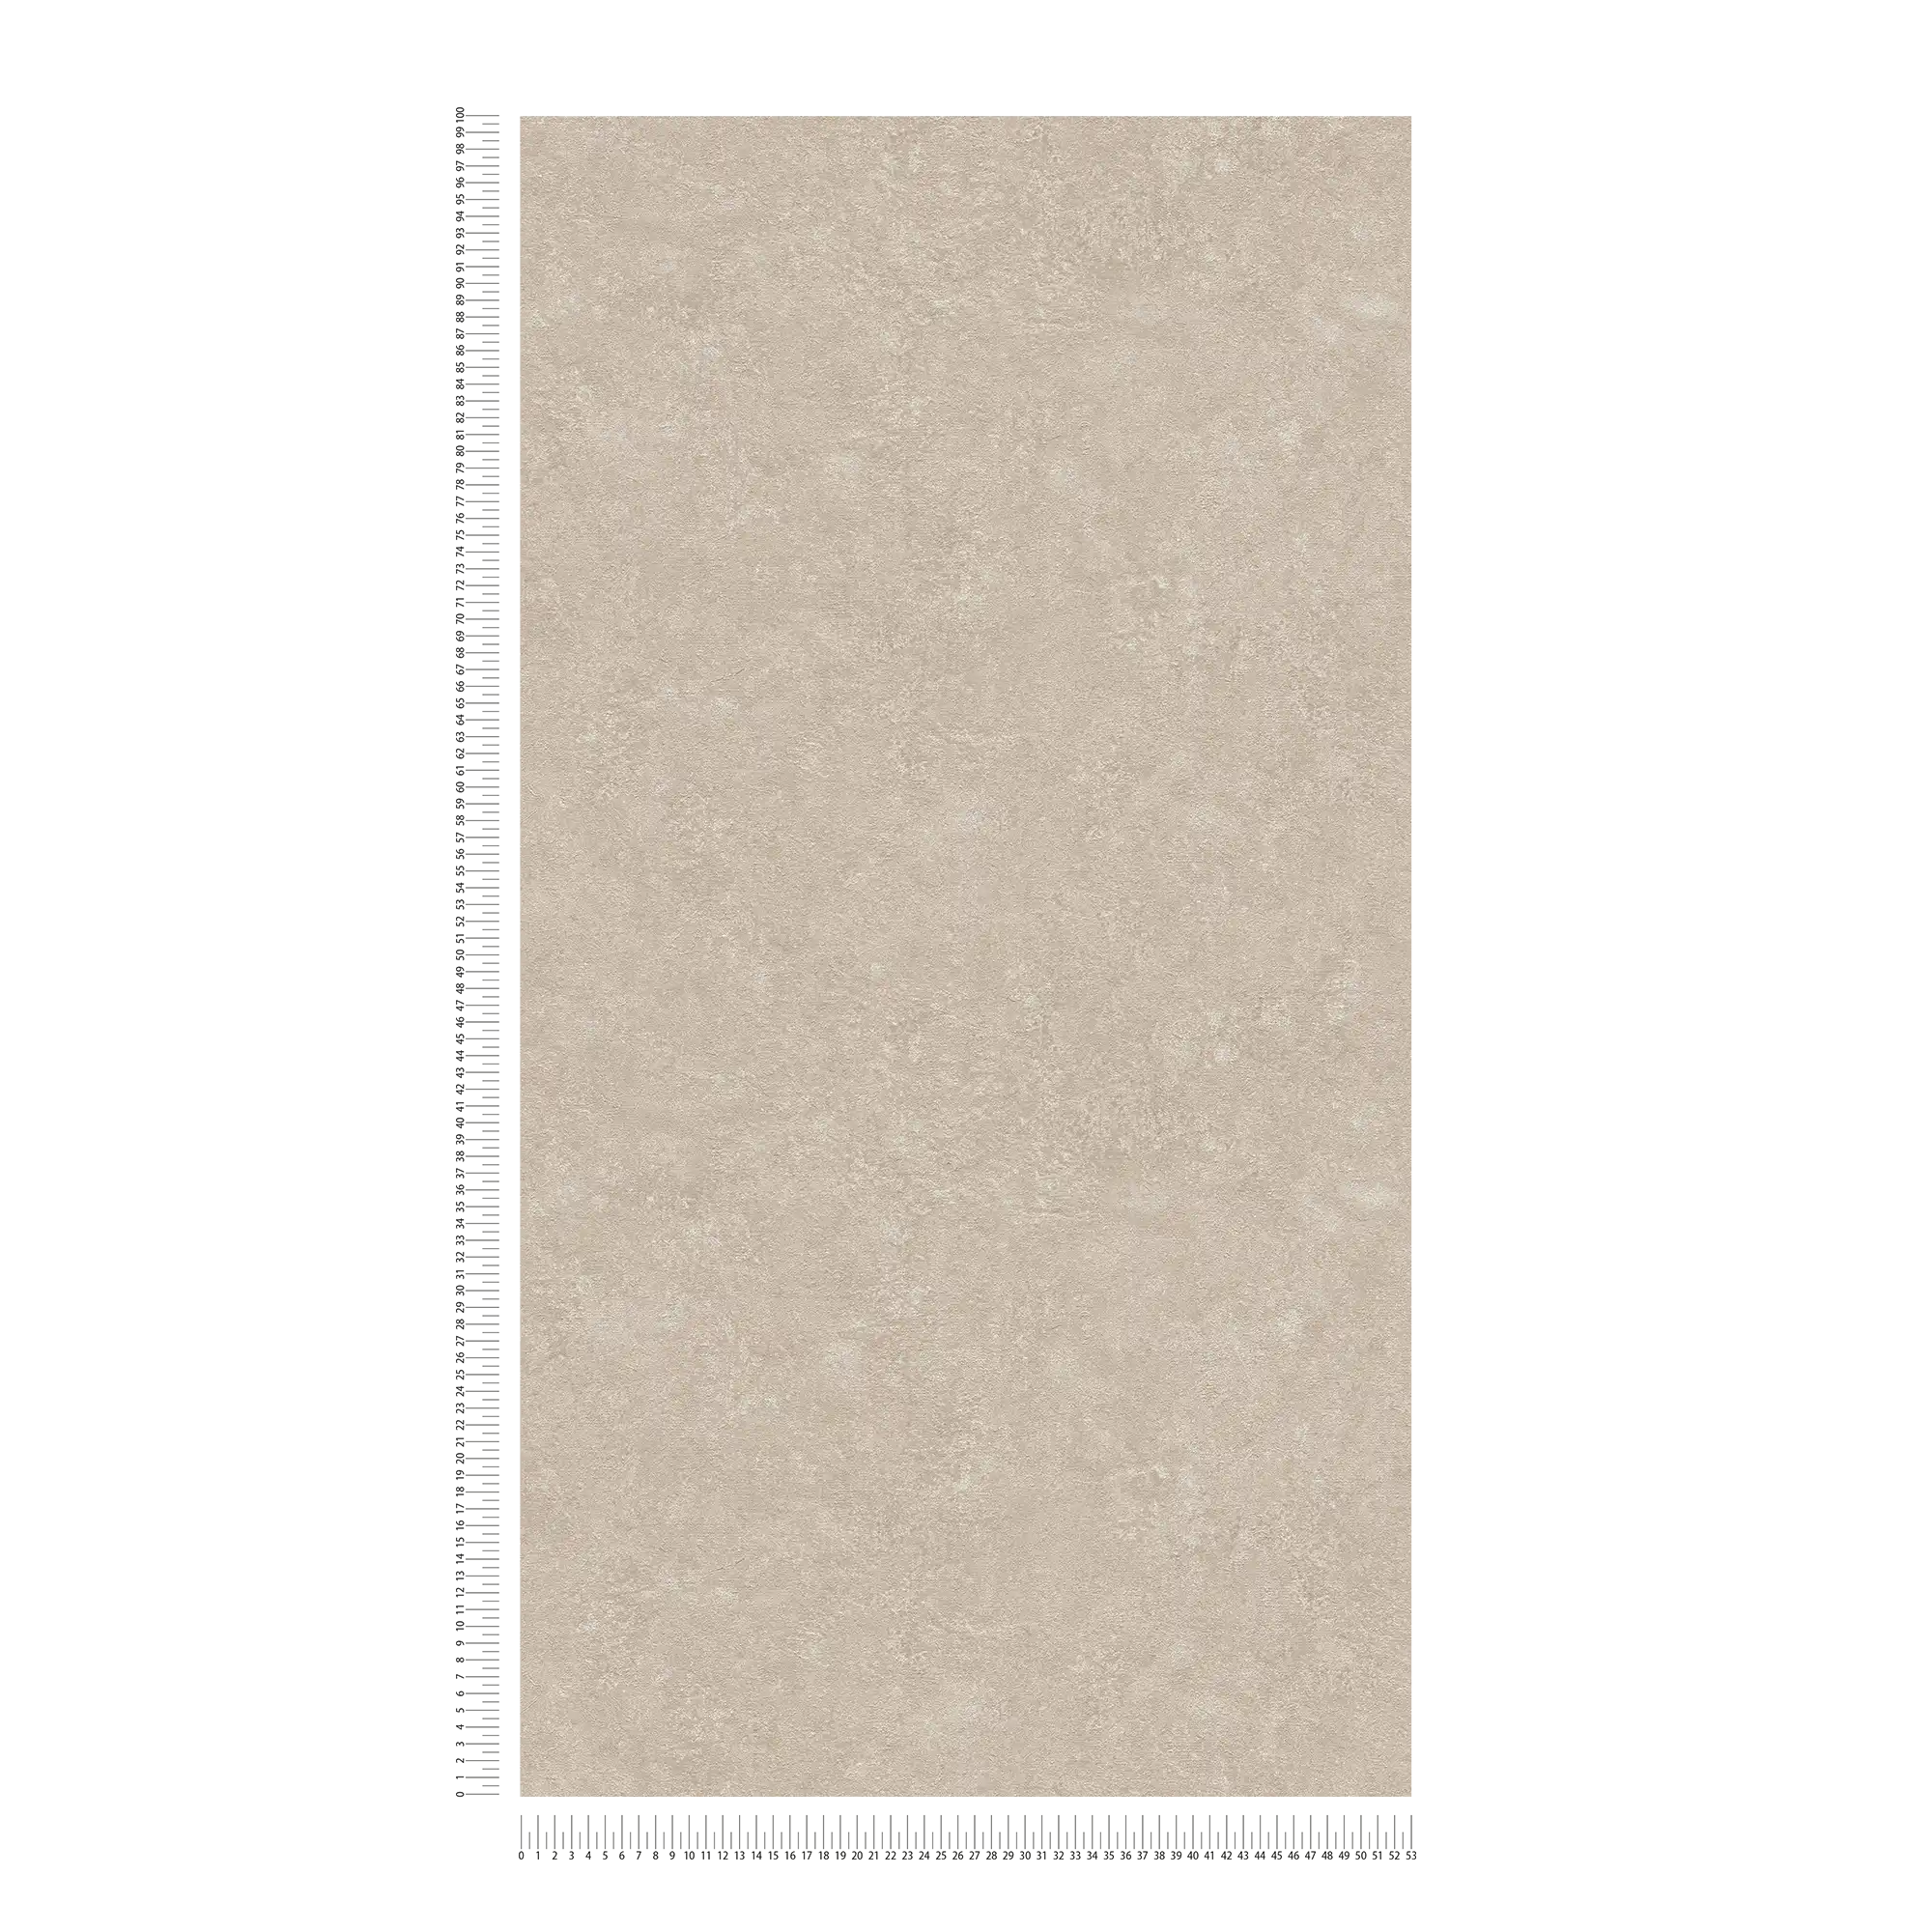             papier peint aspect rugueux crépi style industriel - beige, blanc
        